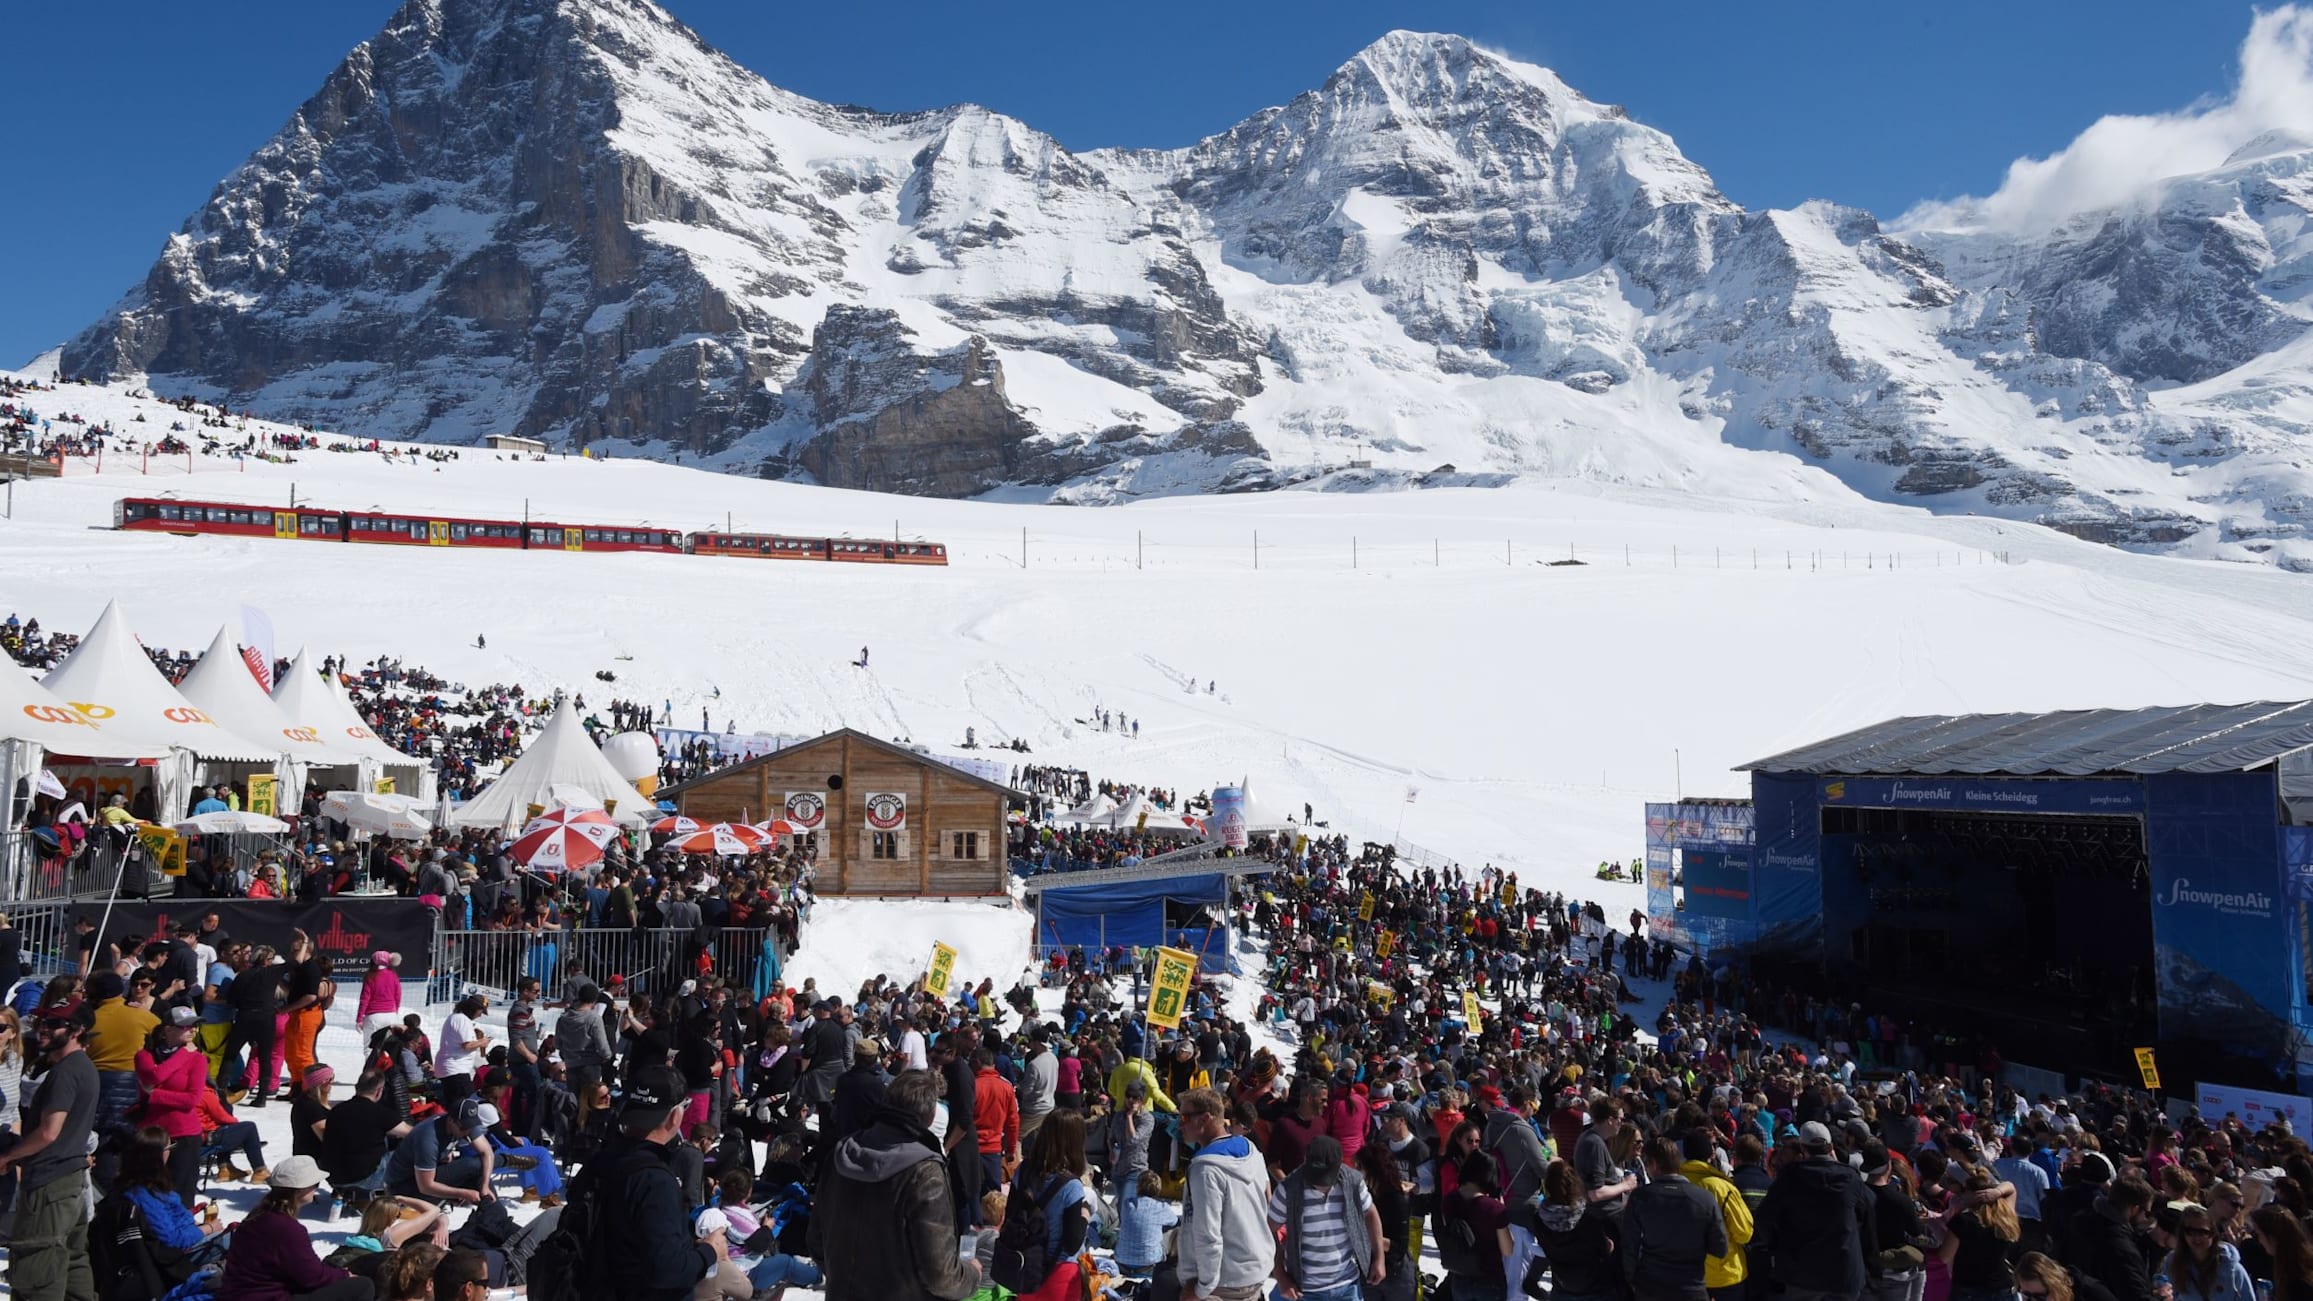 SnowpenAir Gelaende Kleine Scheidegg Jungfraubahn 2019 kl